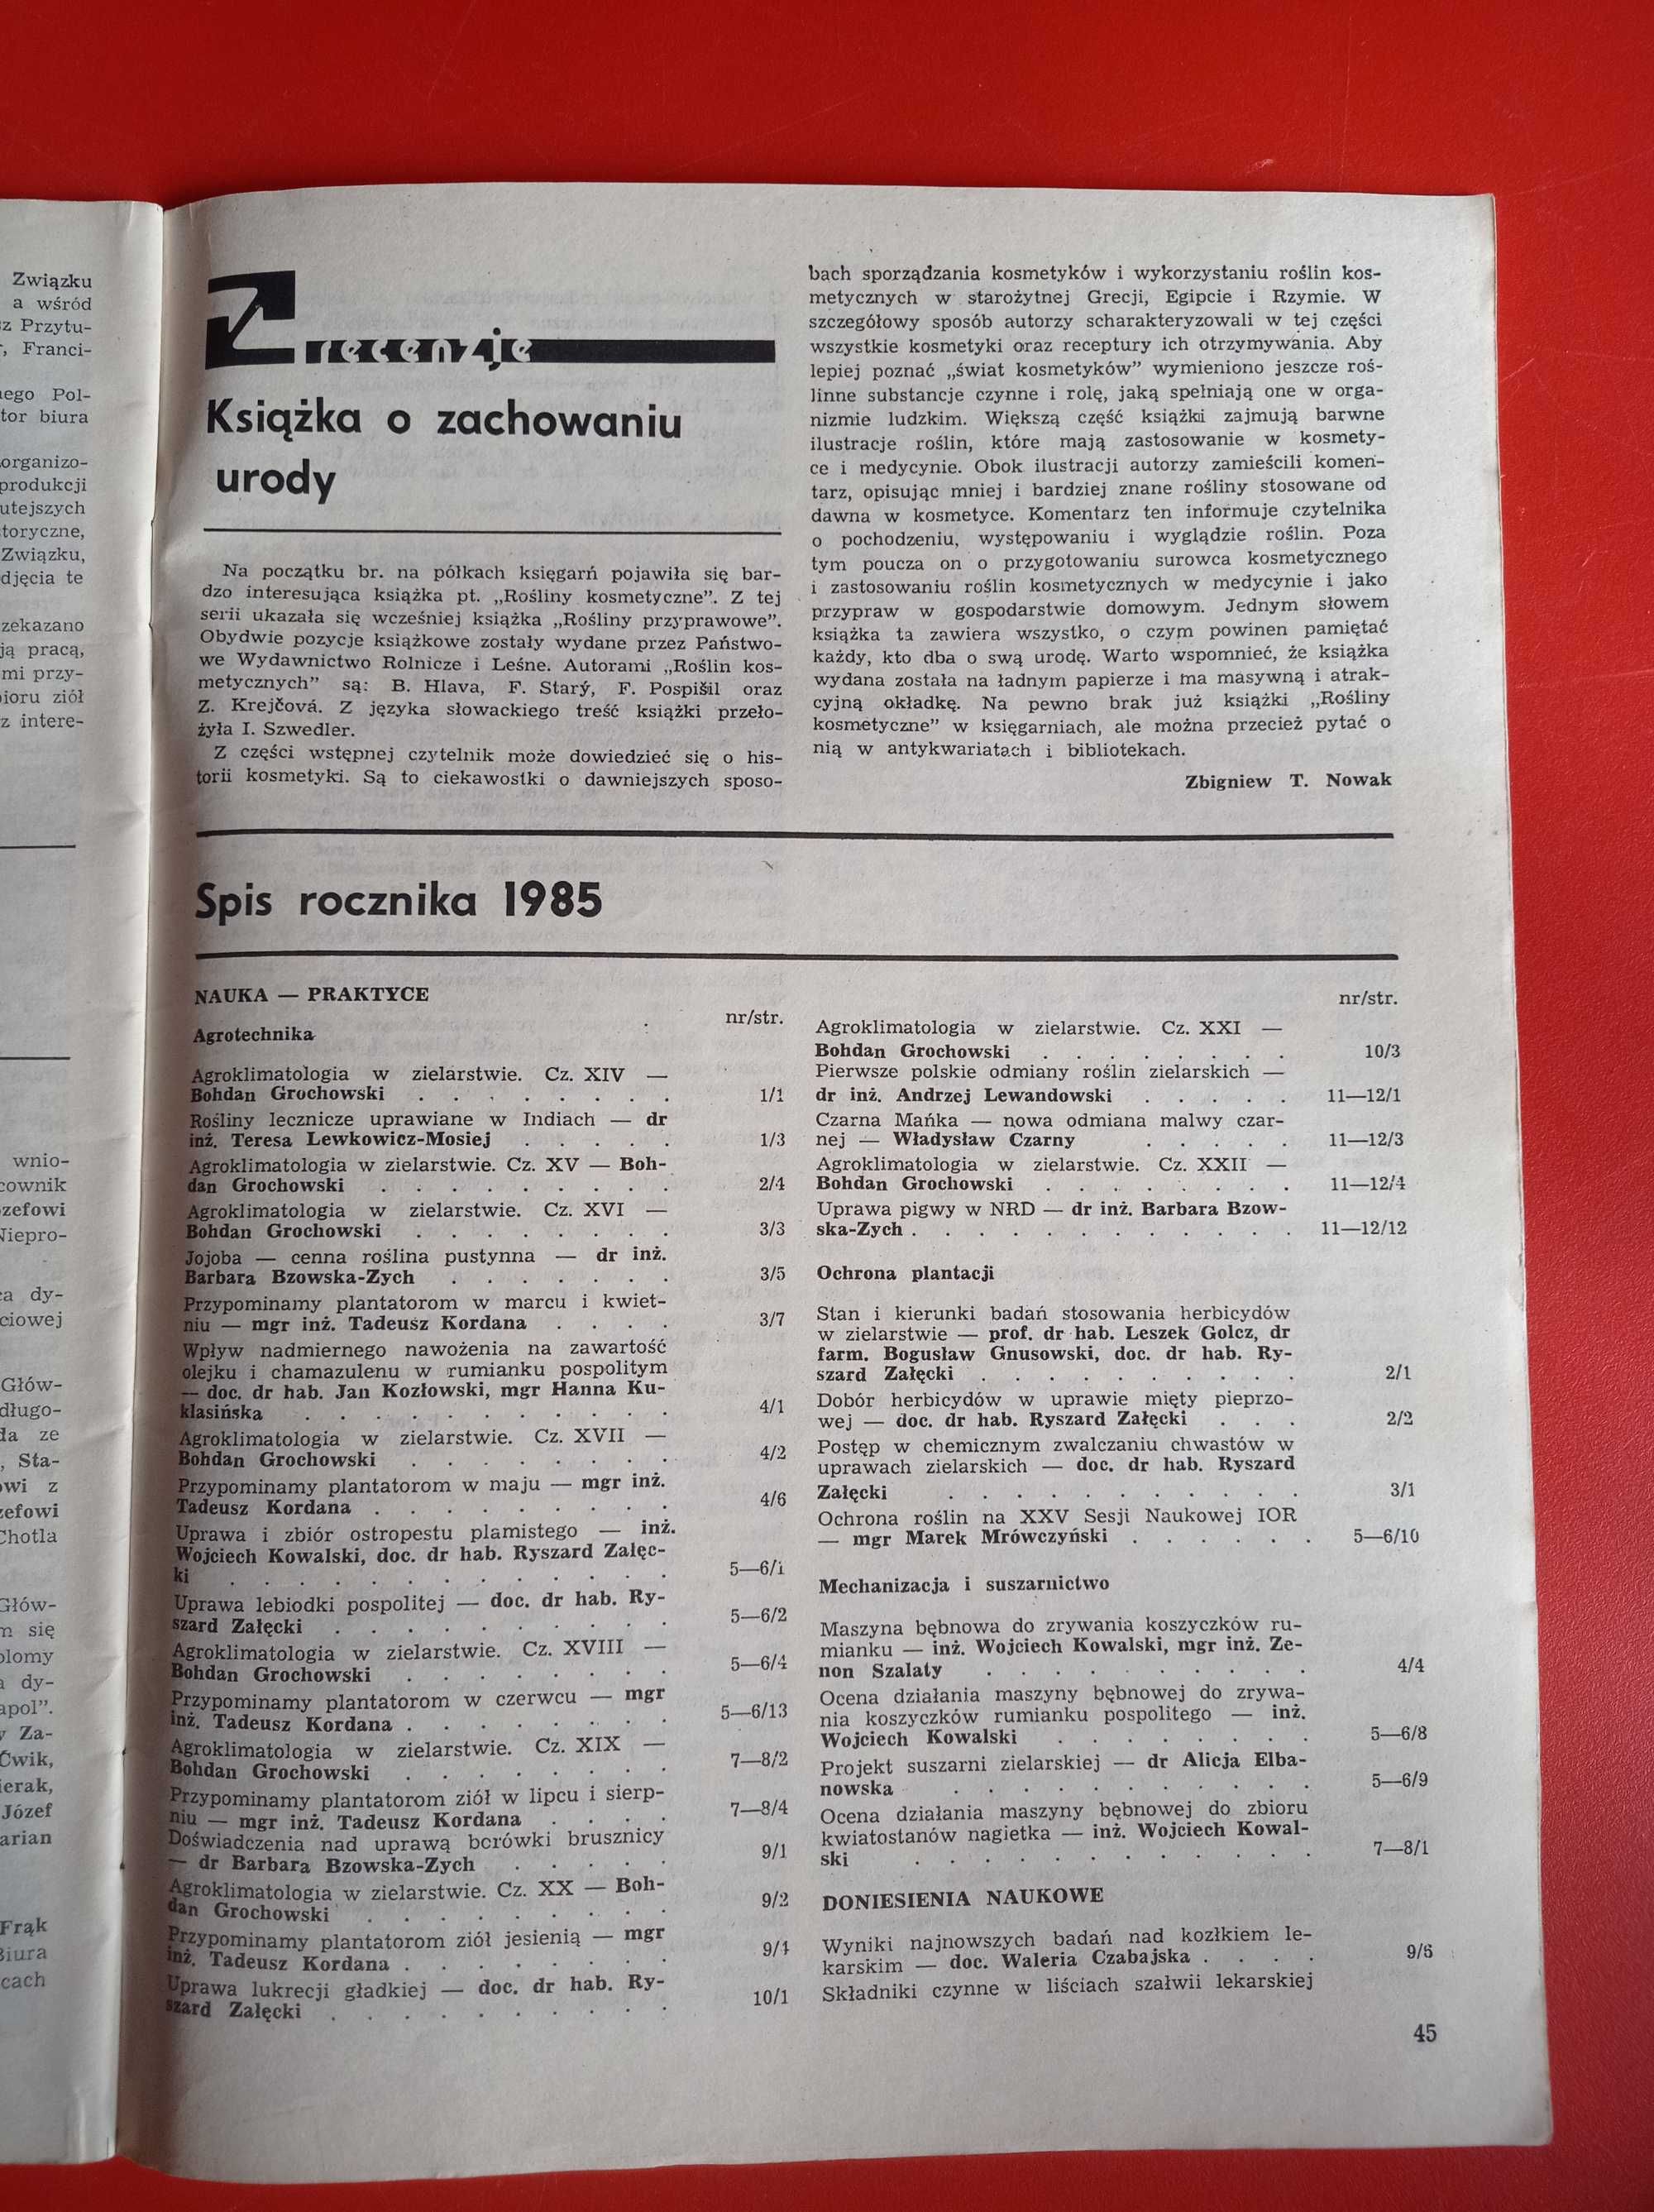 Wiadomości zielarskie nr 3/1985, marzec 1985